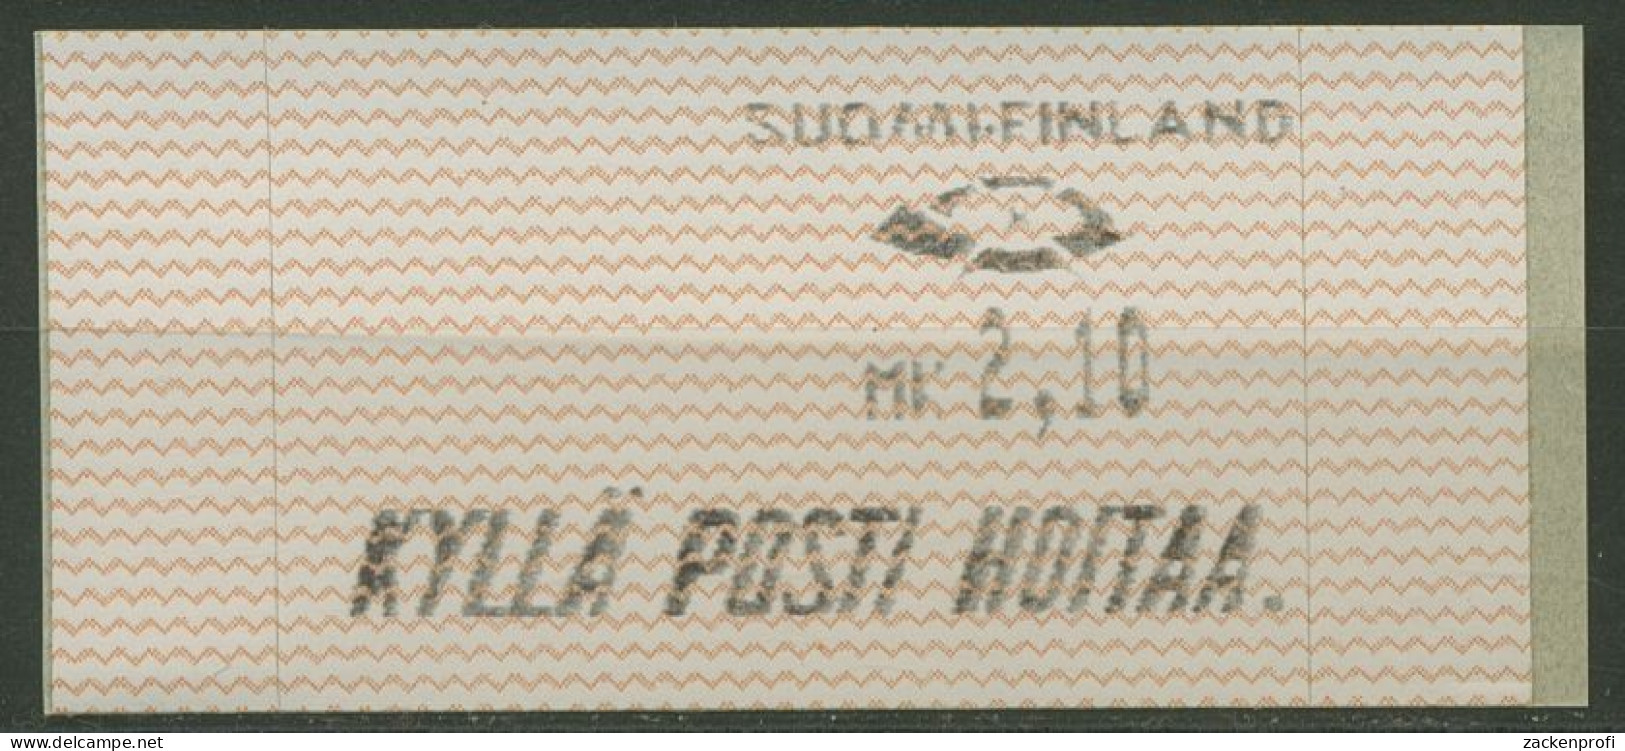 Finnland Automatenmarken 1991 Wellenlinien Einzelwert ATM 10.1 Z 1 Postfrisch - Automaatzegels [ATM]